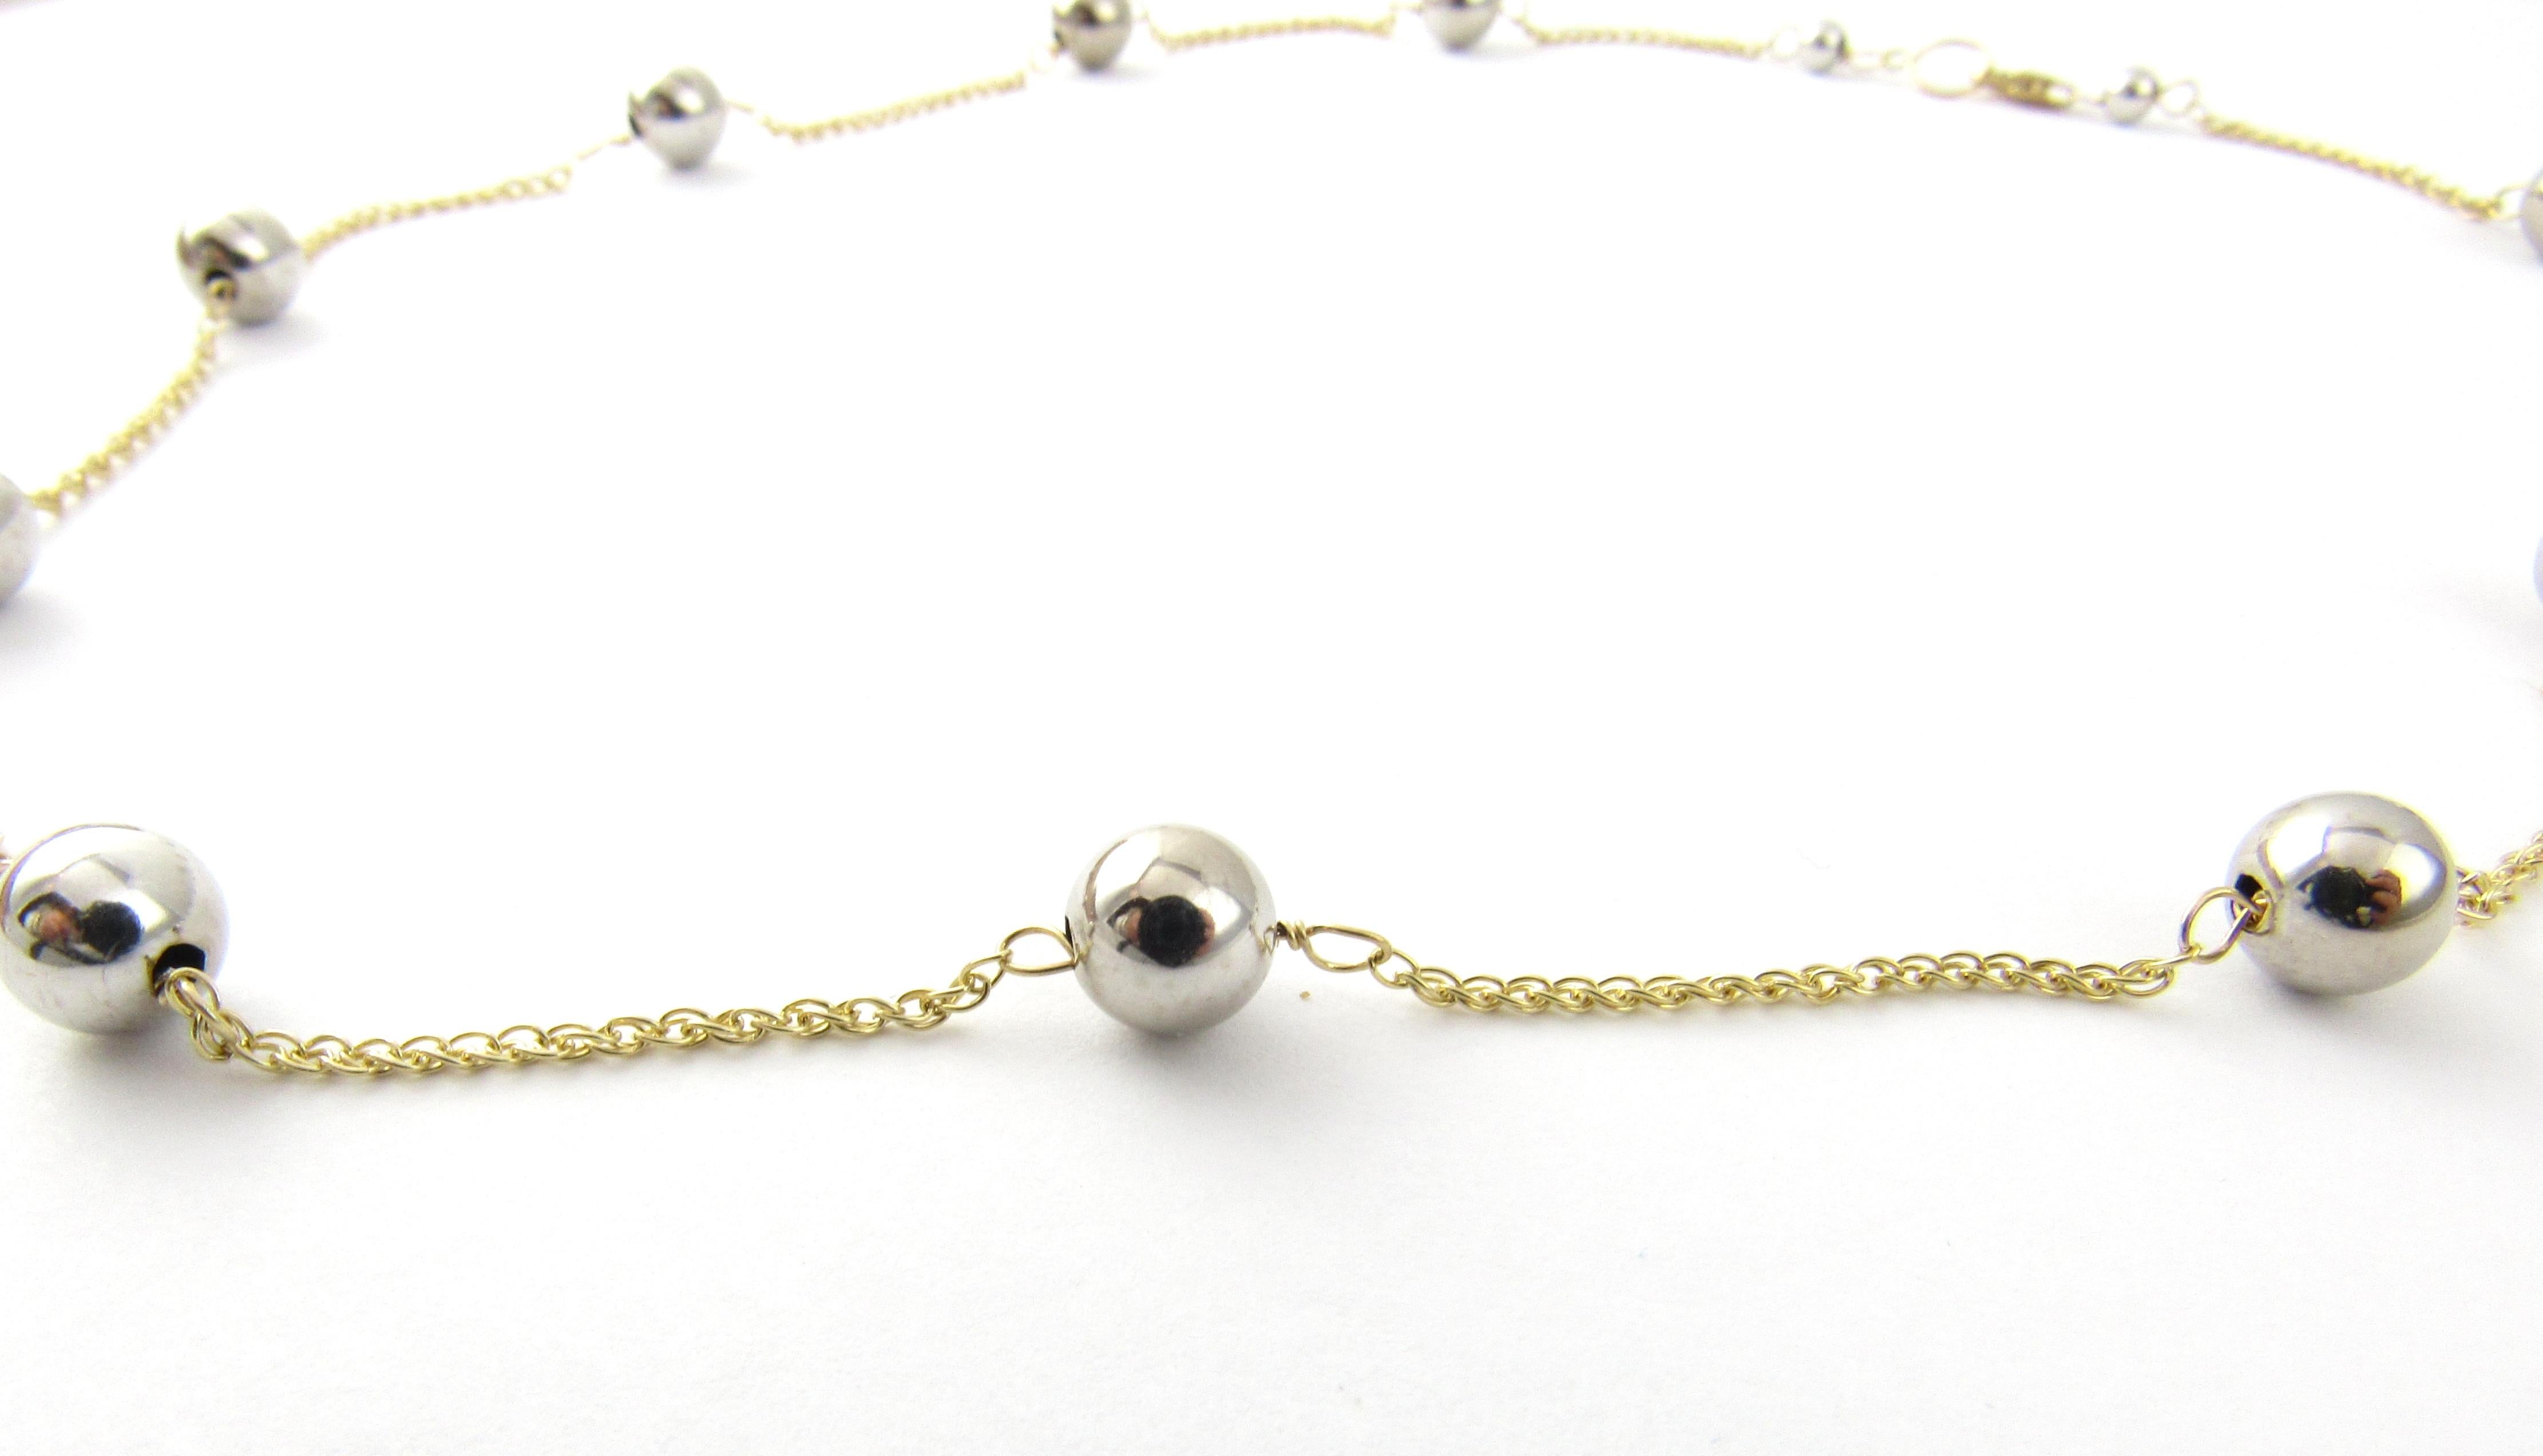 Vieux collier en perles d'or jaune et blanc 18 carats

Ce ravissant collier comporte 11 perles en or blanc (7 mm chacune) sur une chaîne câble classique en or jaune 18 carats.

Taille : 18.5 pouces

Poids : 3.0 / 4.8

Estampillé : 750

Très bon